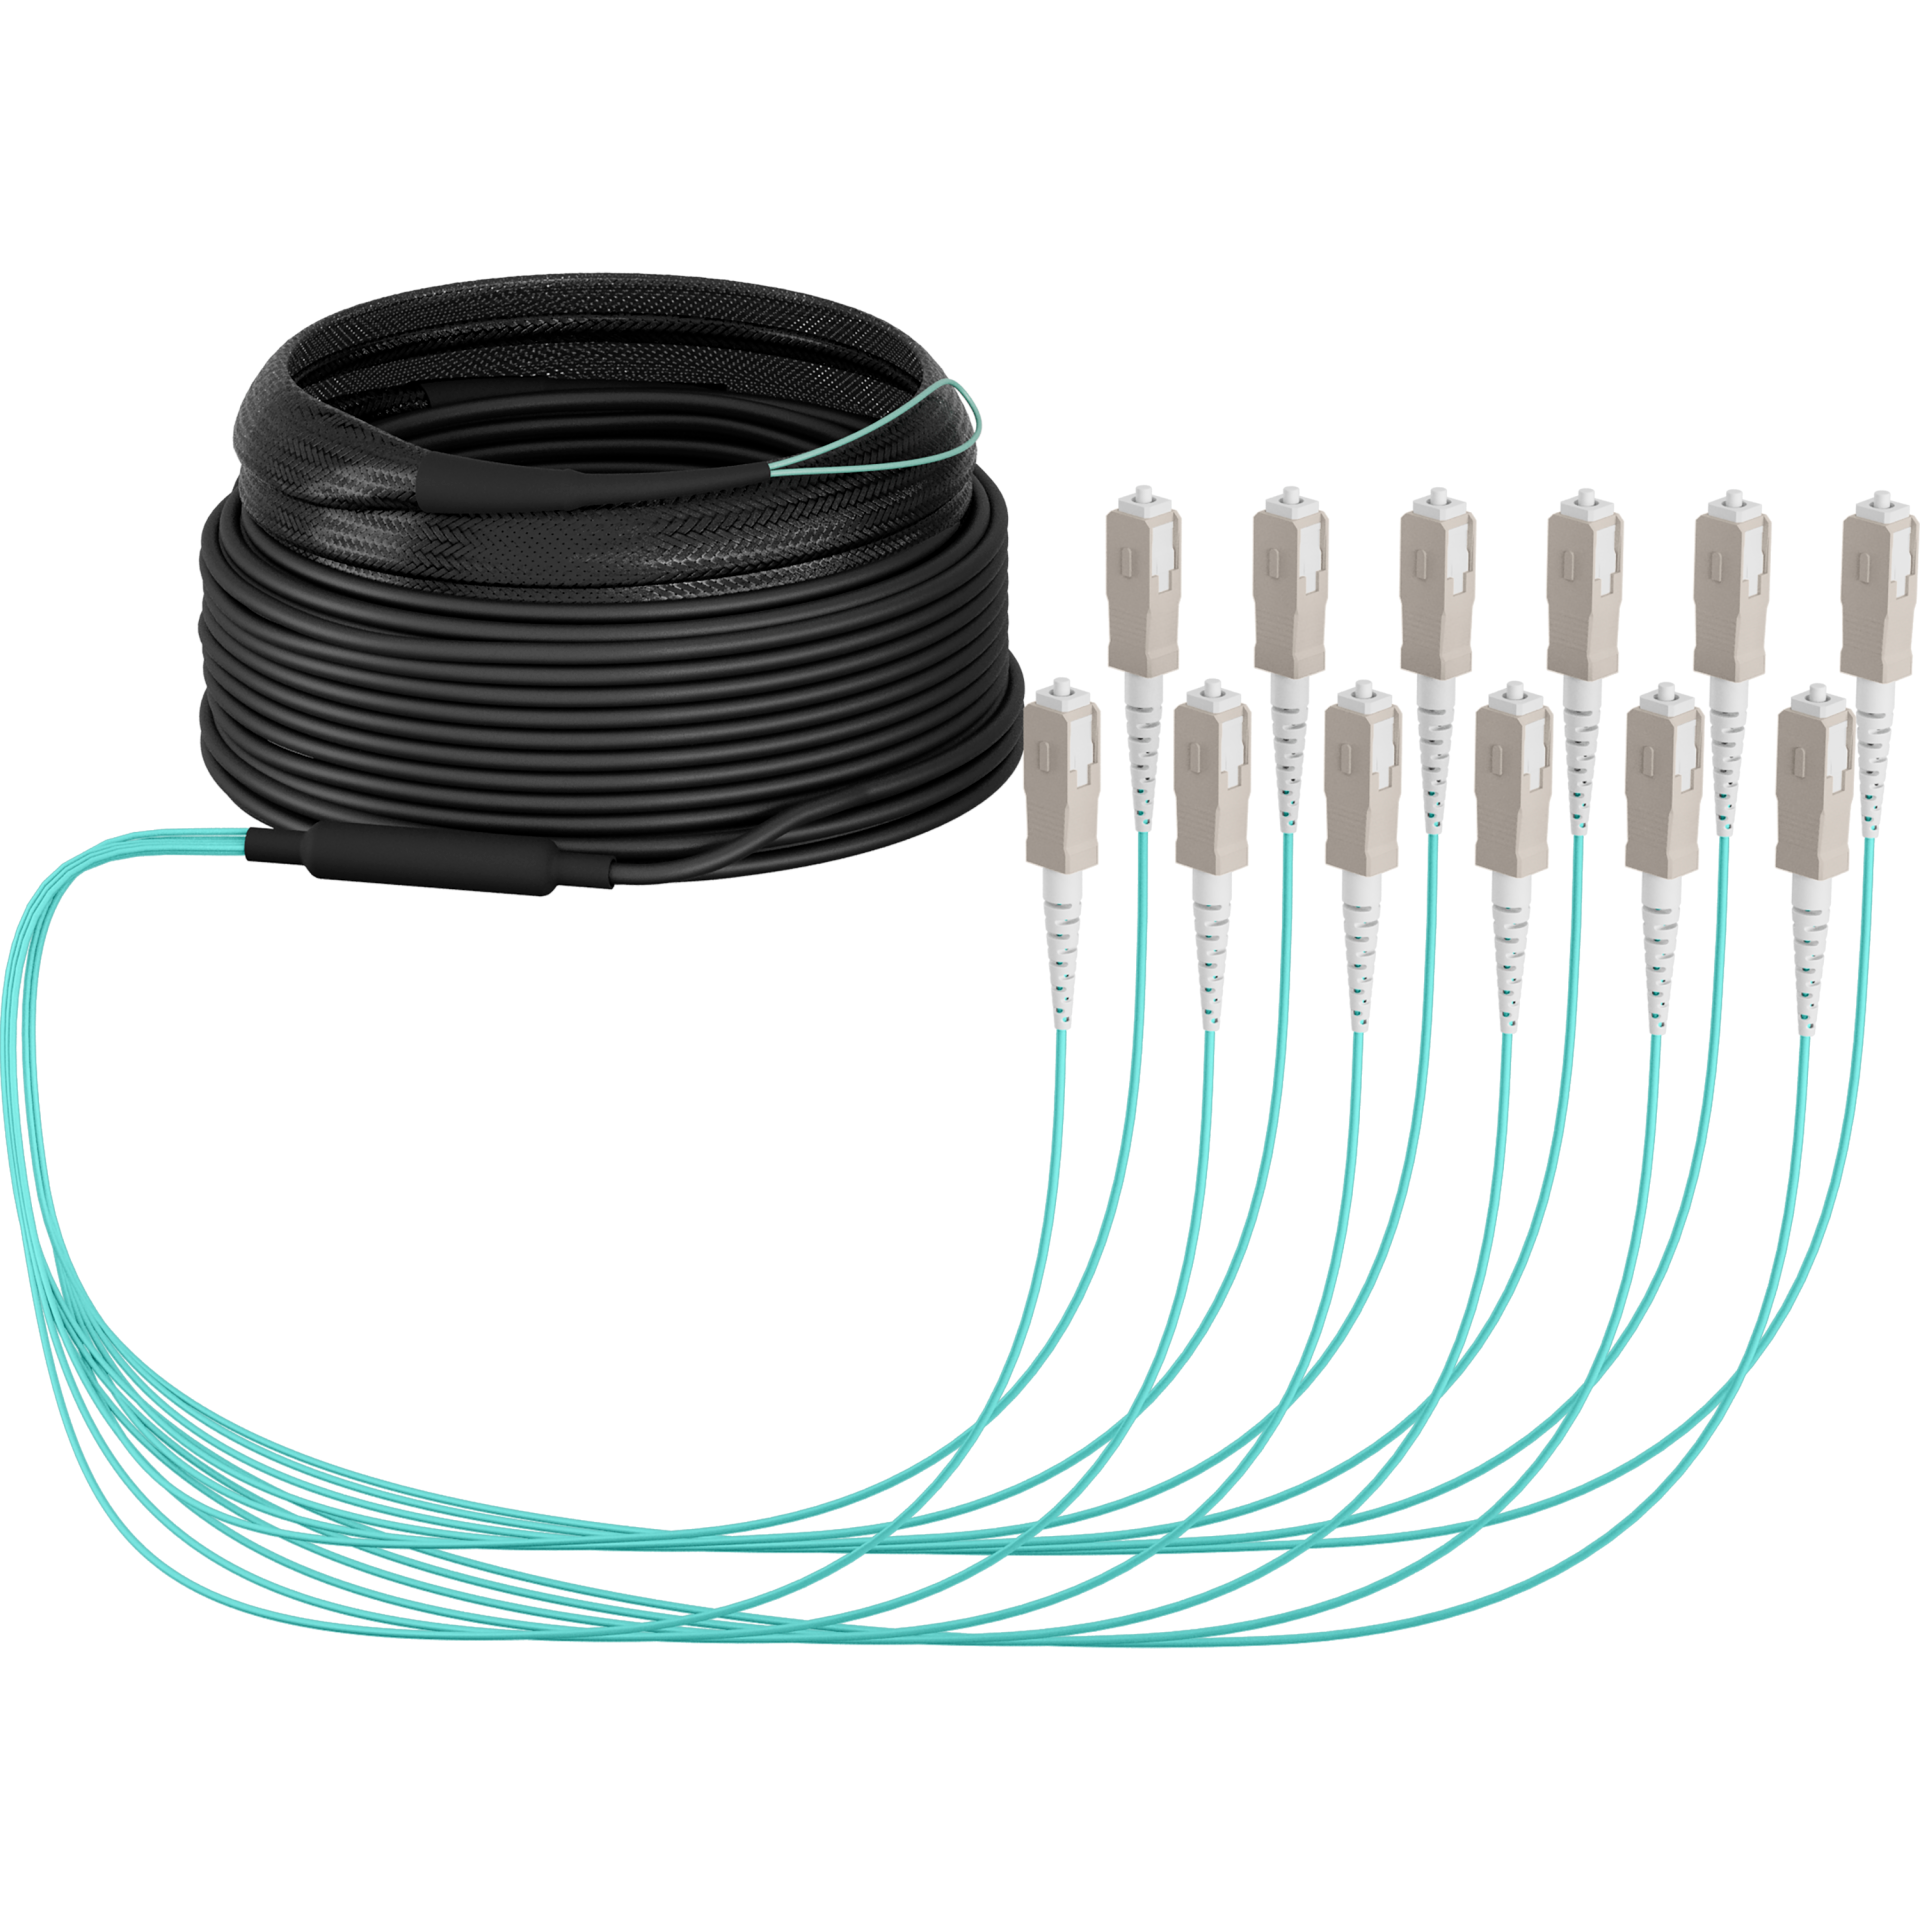 Trunk cable U-DQ(ZN)BH OM3 12G (1x12) SC-SC,10m Dca LSZH